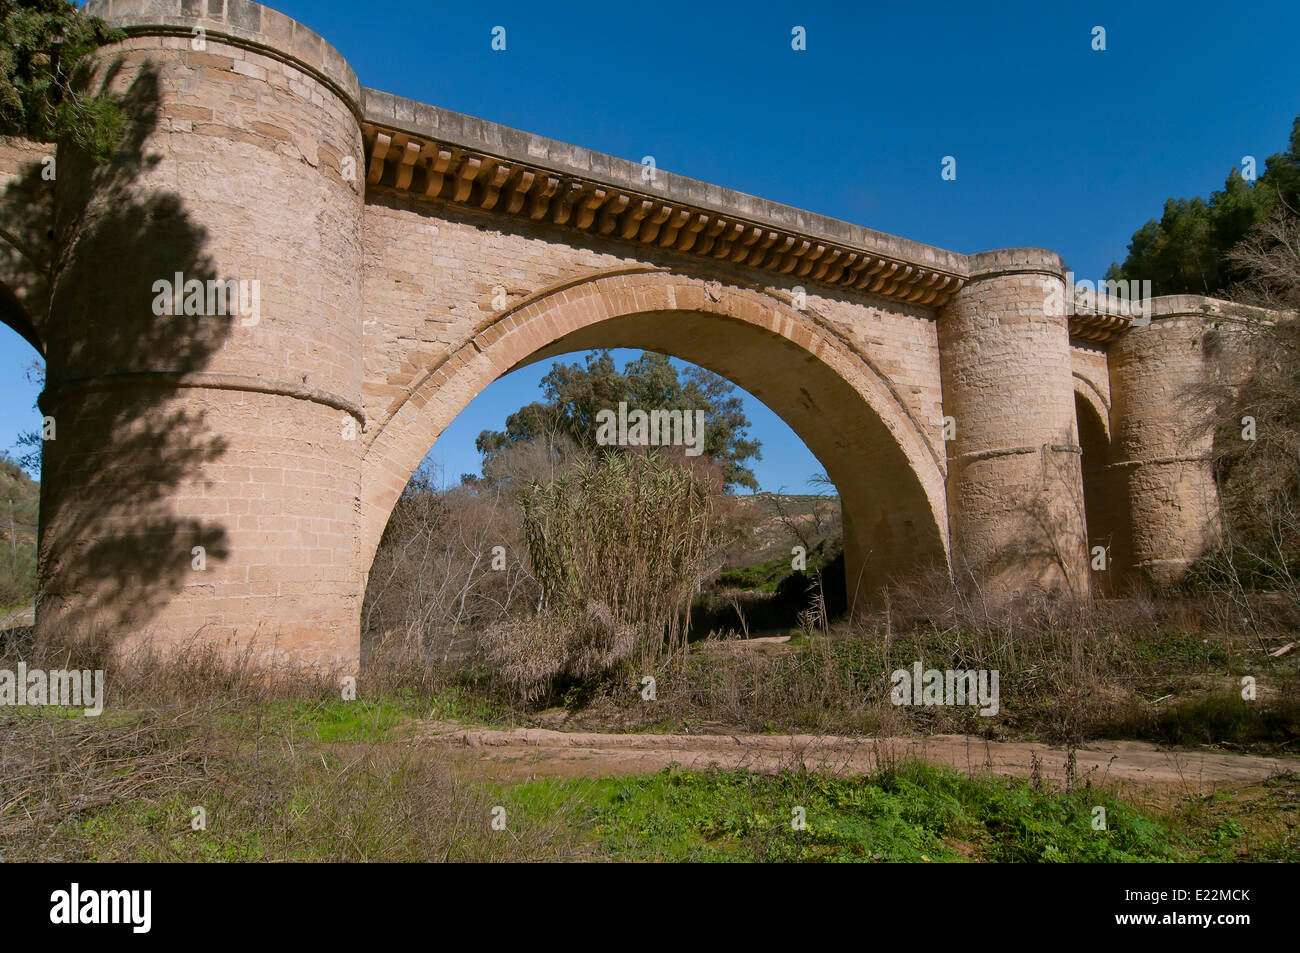 Pont de la Renaissance et de la rivière Genil, 16e siècle, Benameji, Cordoba-province, région d'Andalousie, Espagne, Europe Banque D'Images